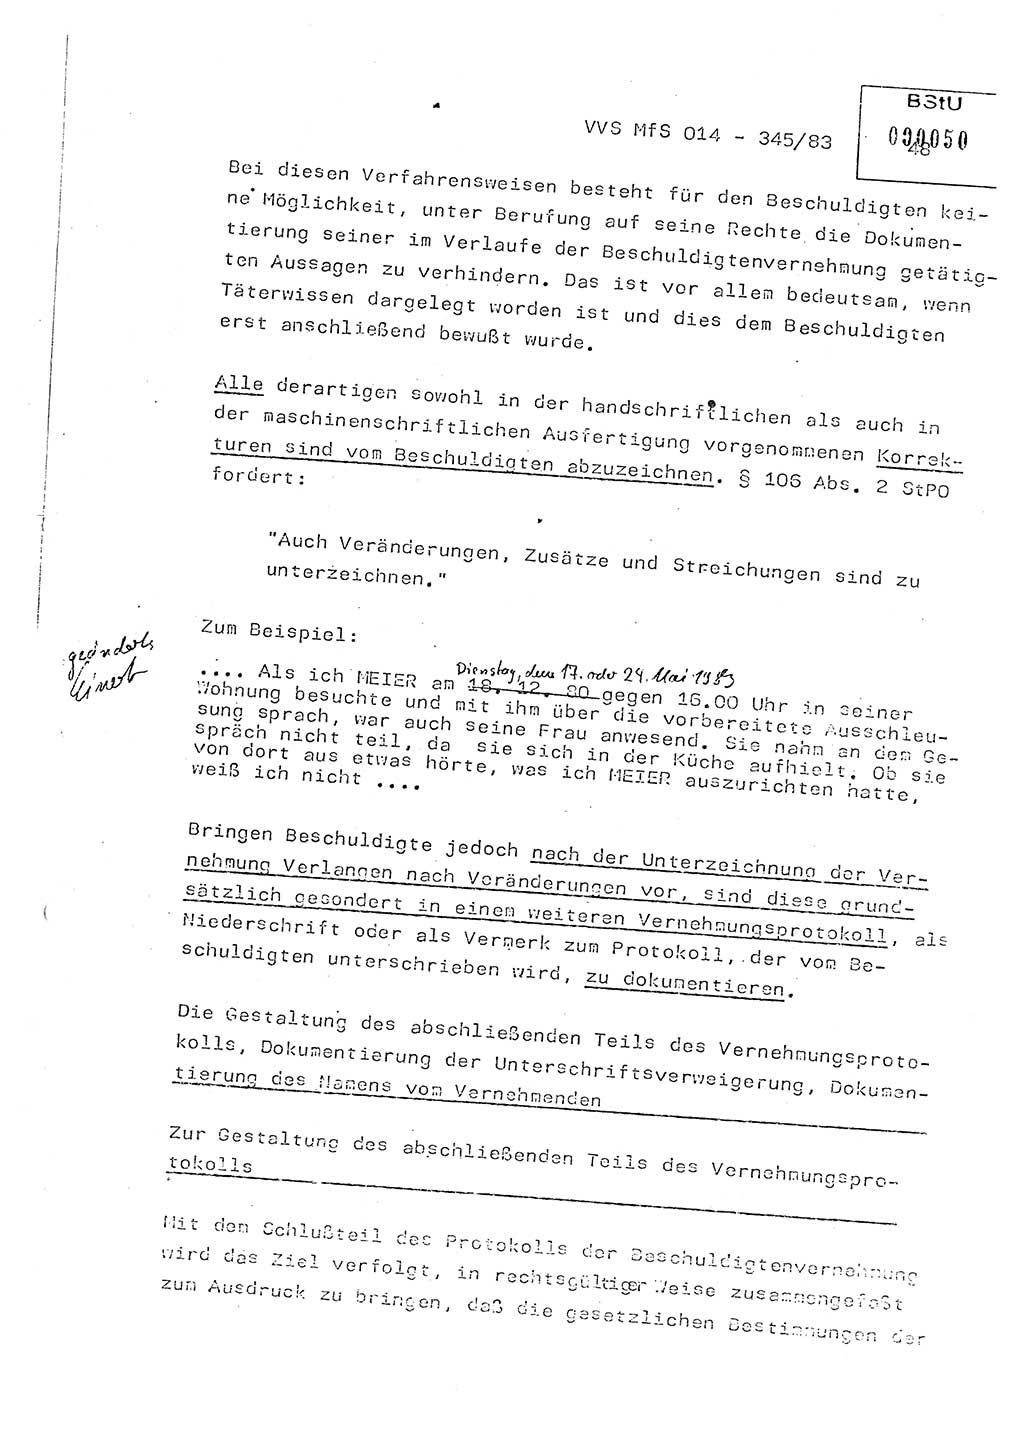 Lektion Ministerium für Staatssicherheit (MfS) [Deutsche Demokratische Republik (DDR)], Hauptabteilung (HA) Ⅸ, Vertrauliche Verschlußsache (VVS) o014-345/83, Berlin 1983, Seite 48 (Lekt. MfS DDR HA Ⅸ VVS o014-345/83 1983, S. 48)